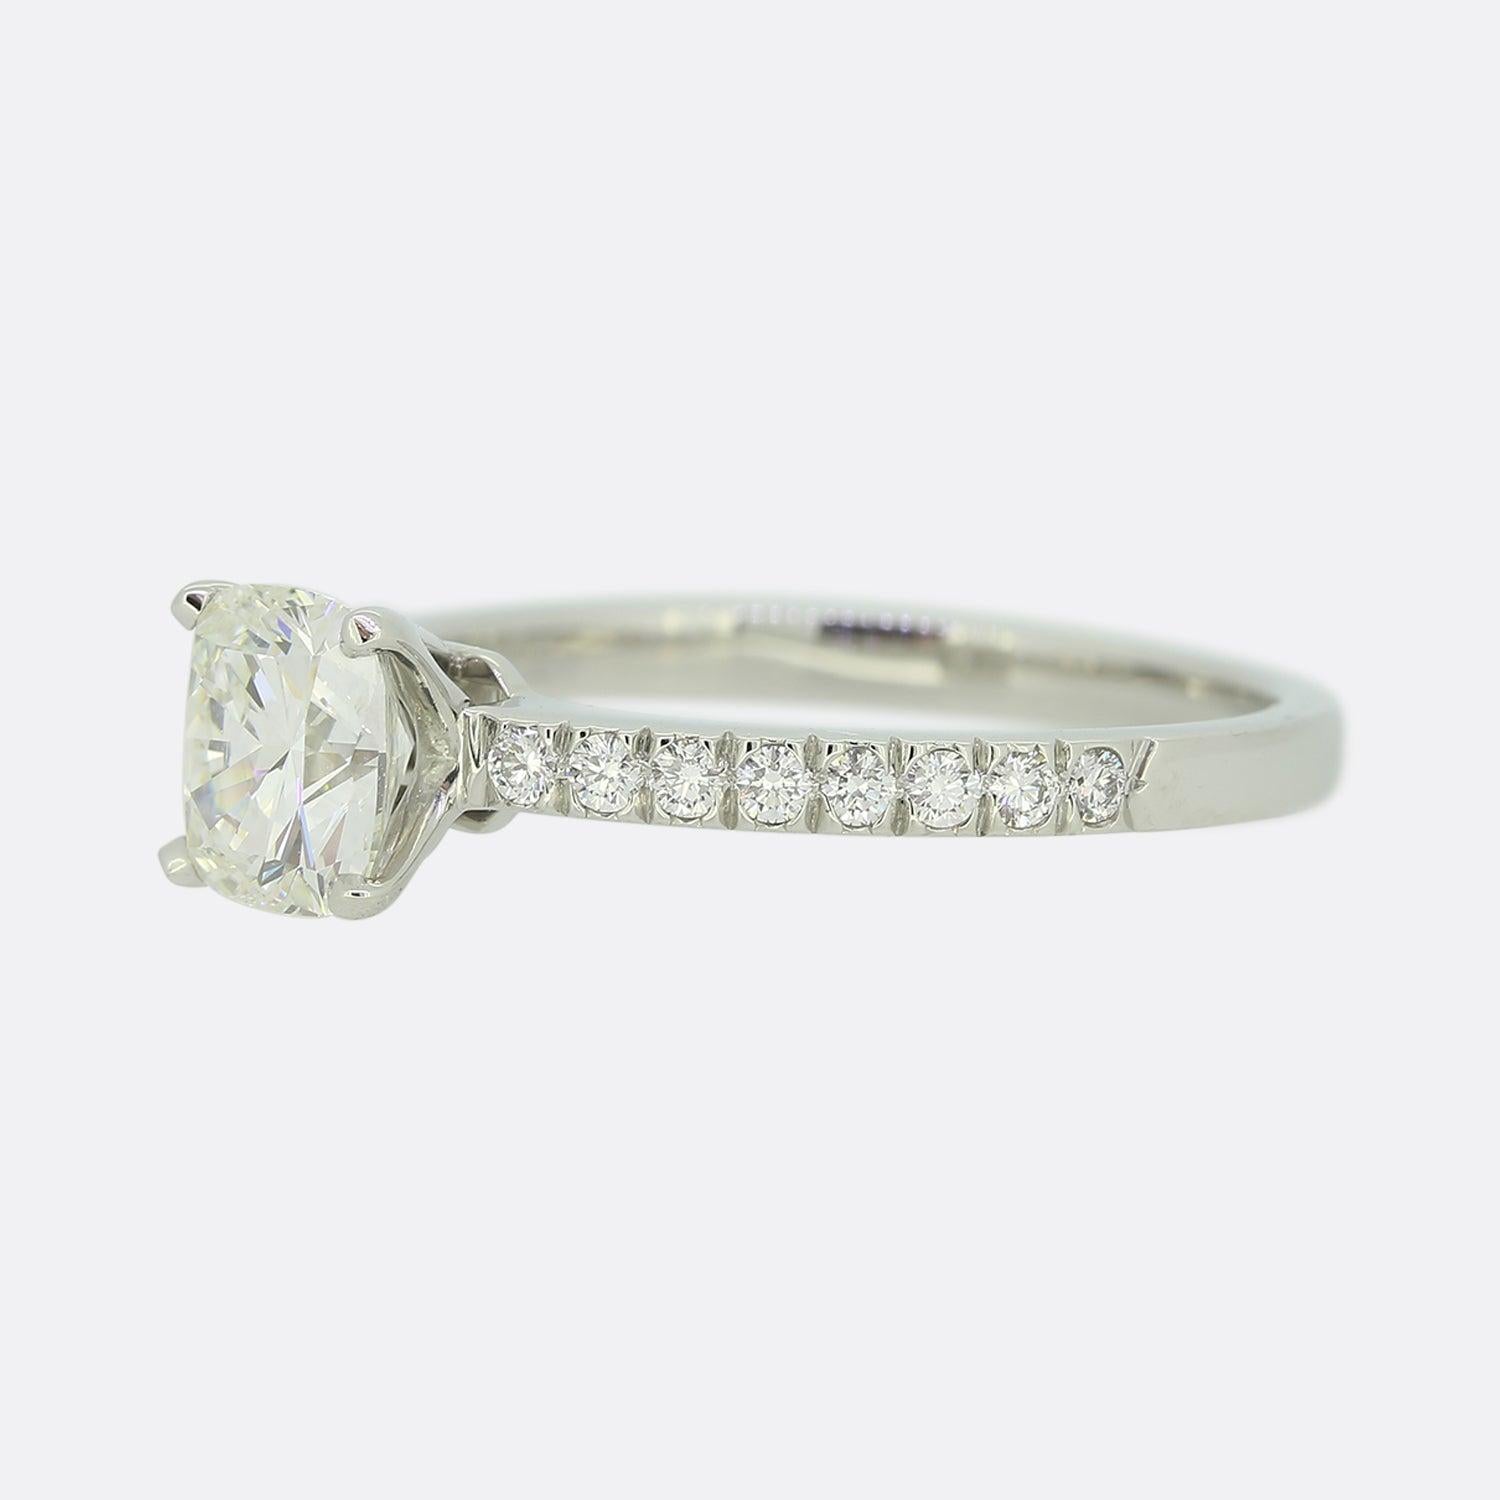 Voici une magnifique bague de fiançailles solitaire en platine de Tiffany & Co. La pierre centrale est un diamant de 1,10 carat de taille coussin, serti dans la monture emblématique de Tiffany à quatre griffes.

Condit : Utilisé (Très bon)
Poids :